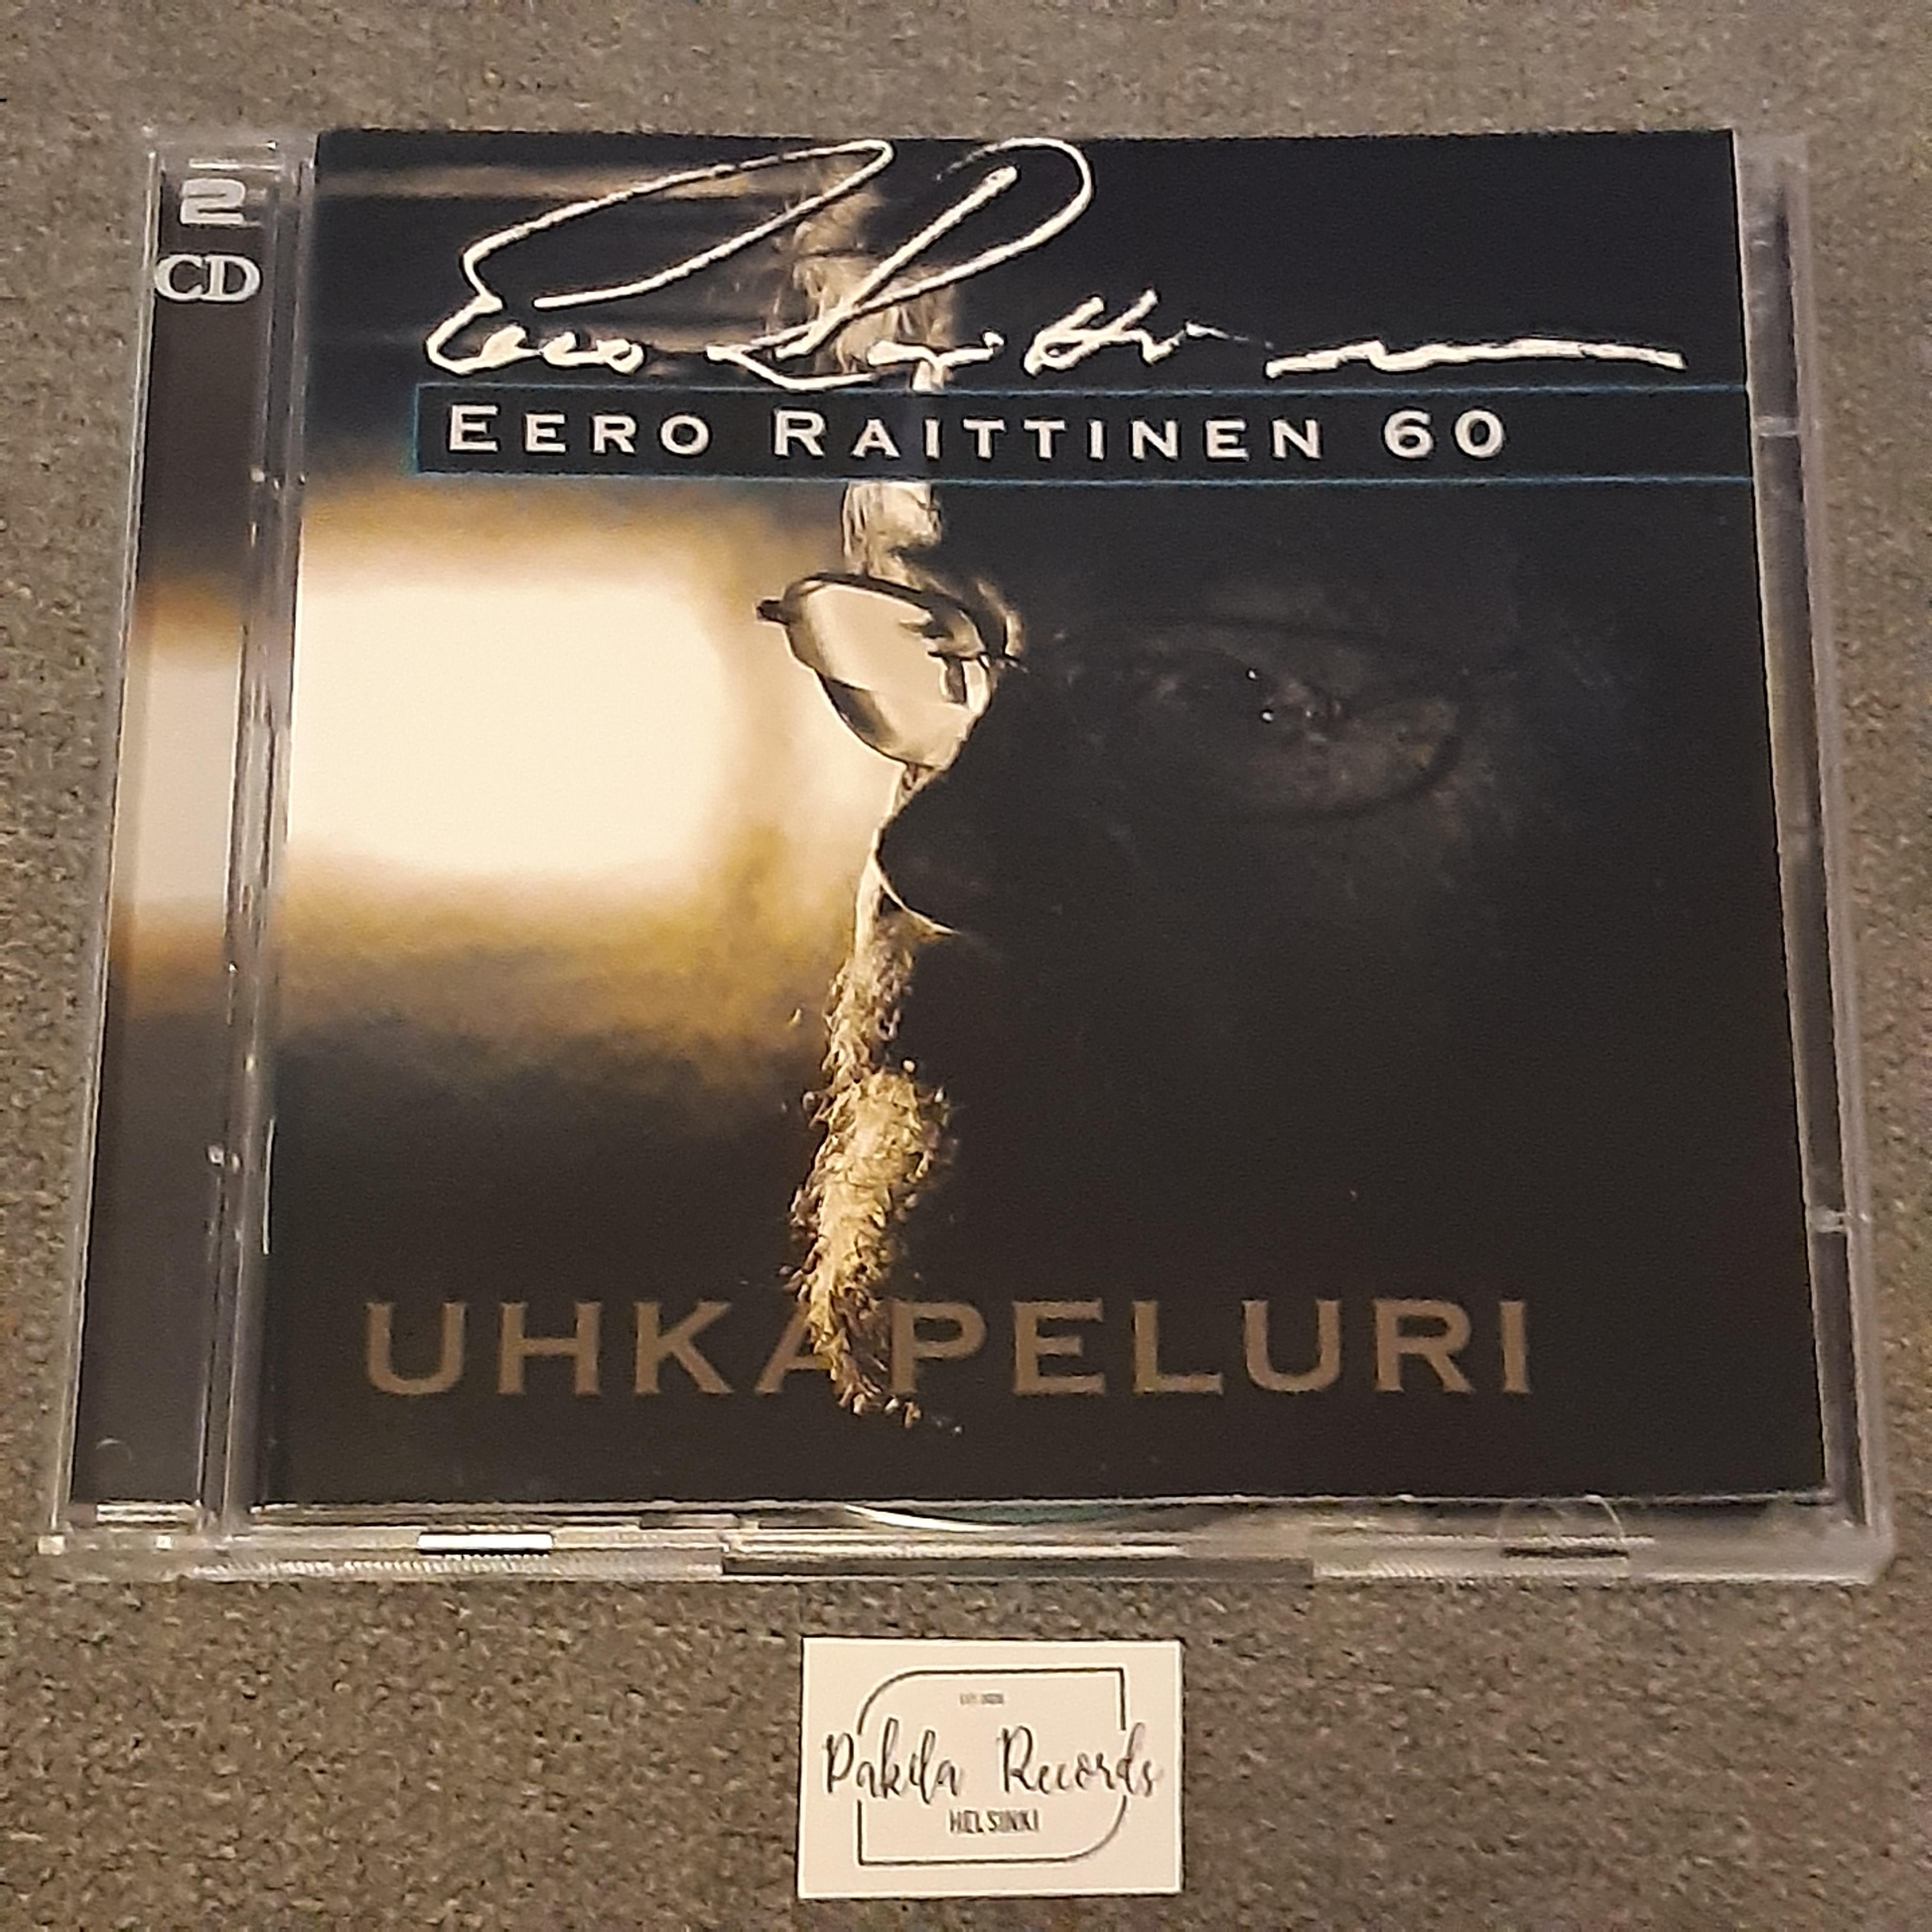 Eero Raittinen - Uhkapeluri, Eero Raittinen 60 - 2 CD (käytetty)